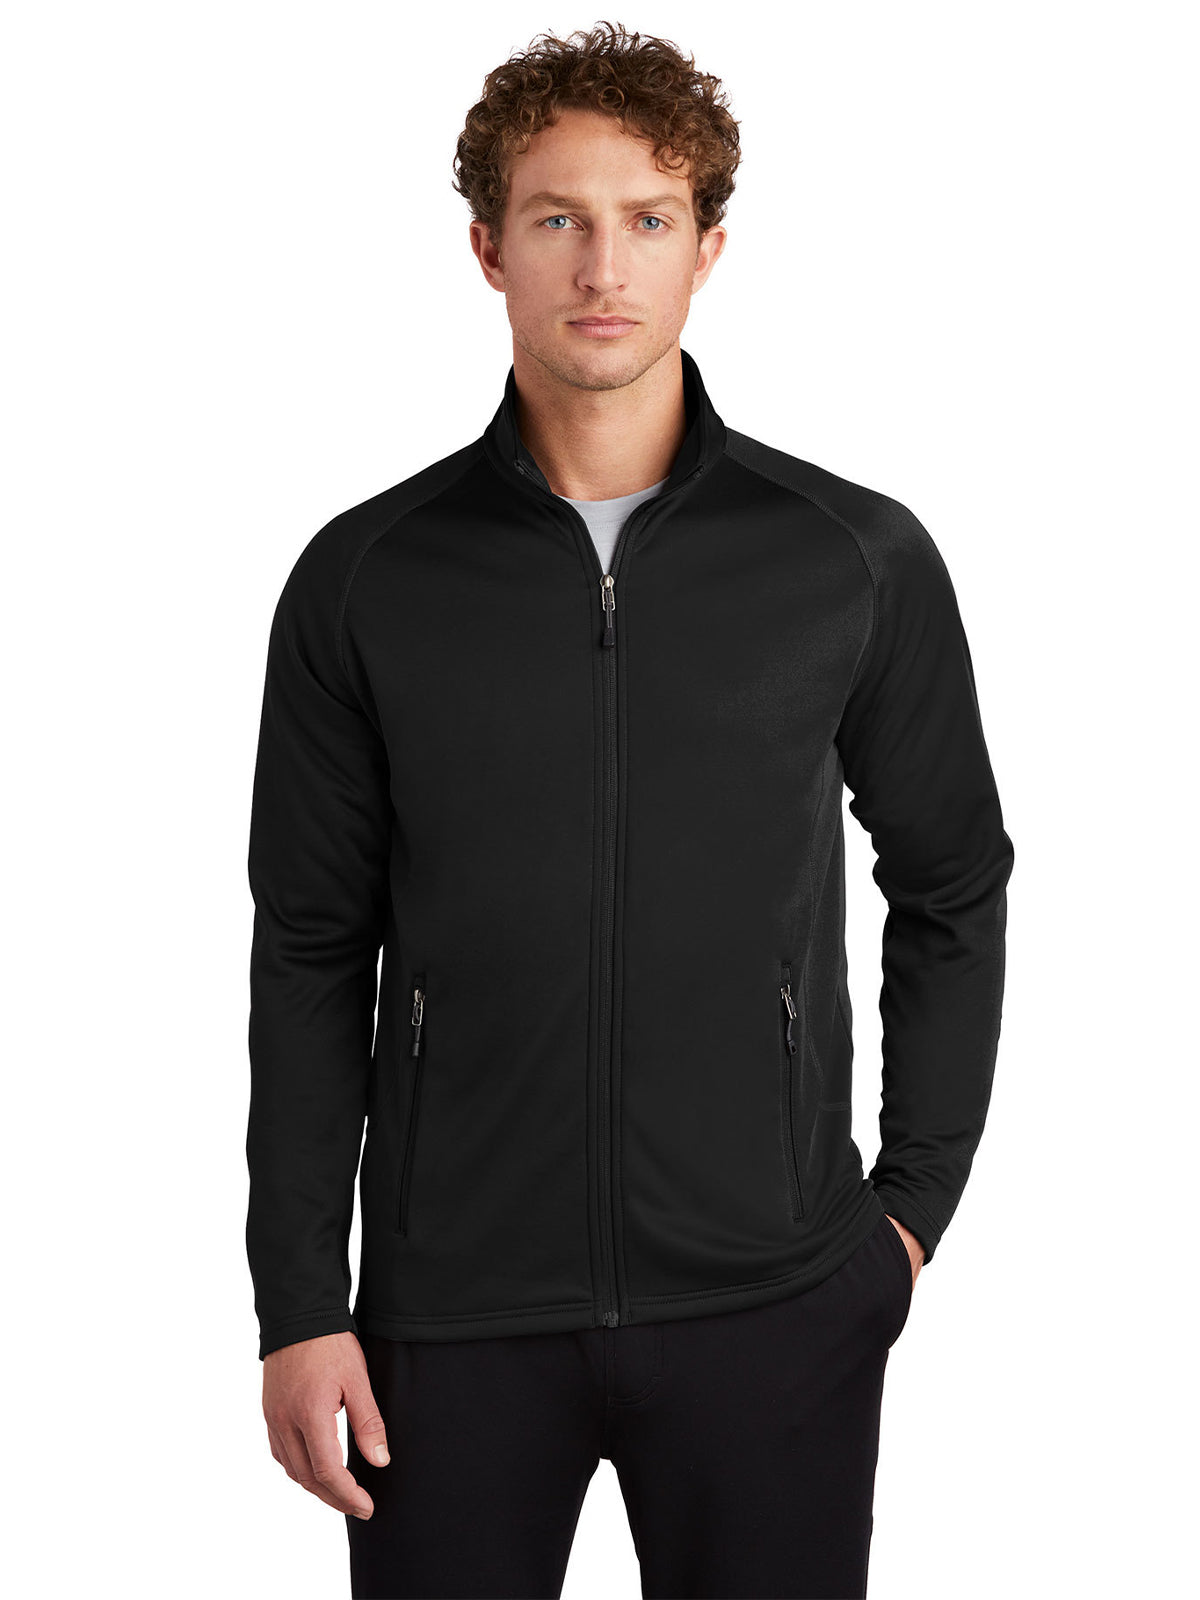 Men's Smooth Fleece Full Zip Jacket - EB246 - Black